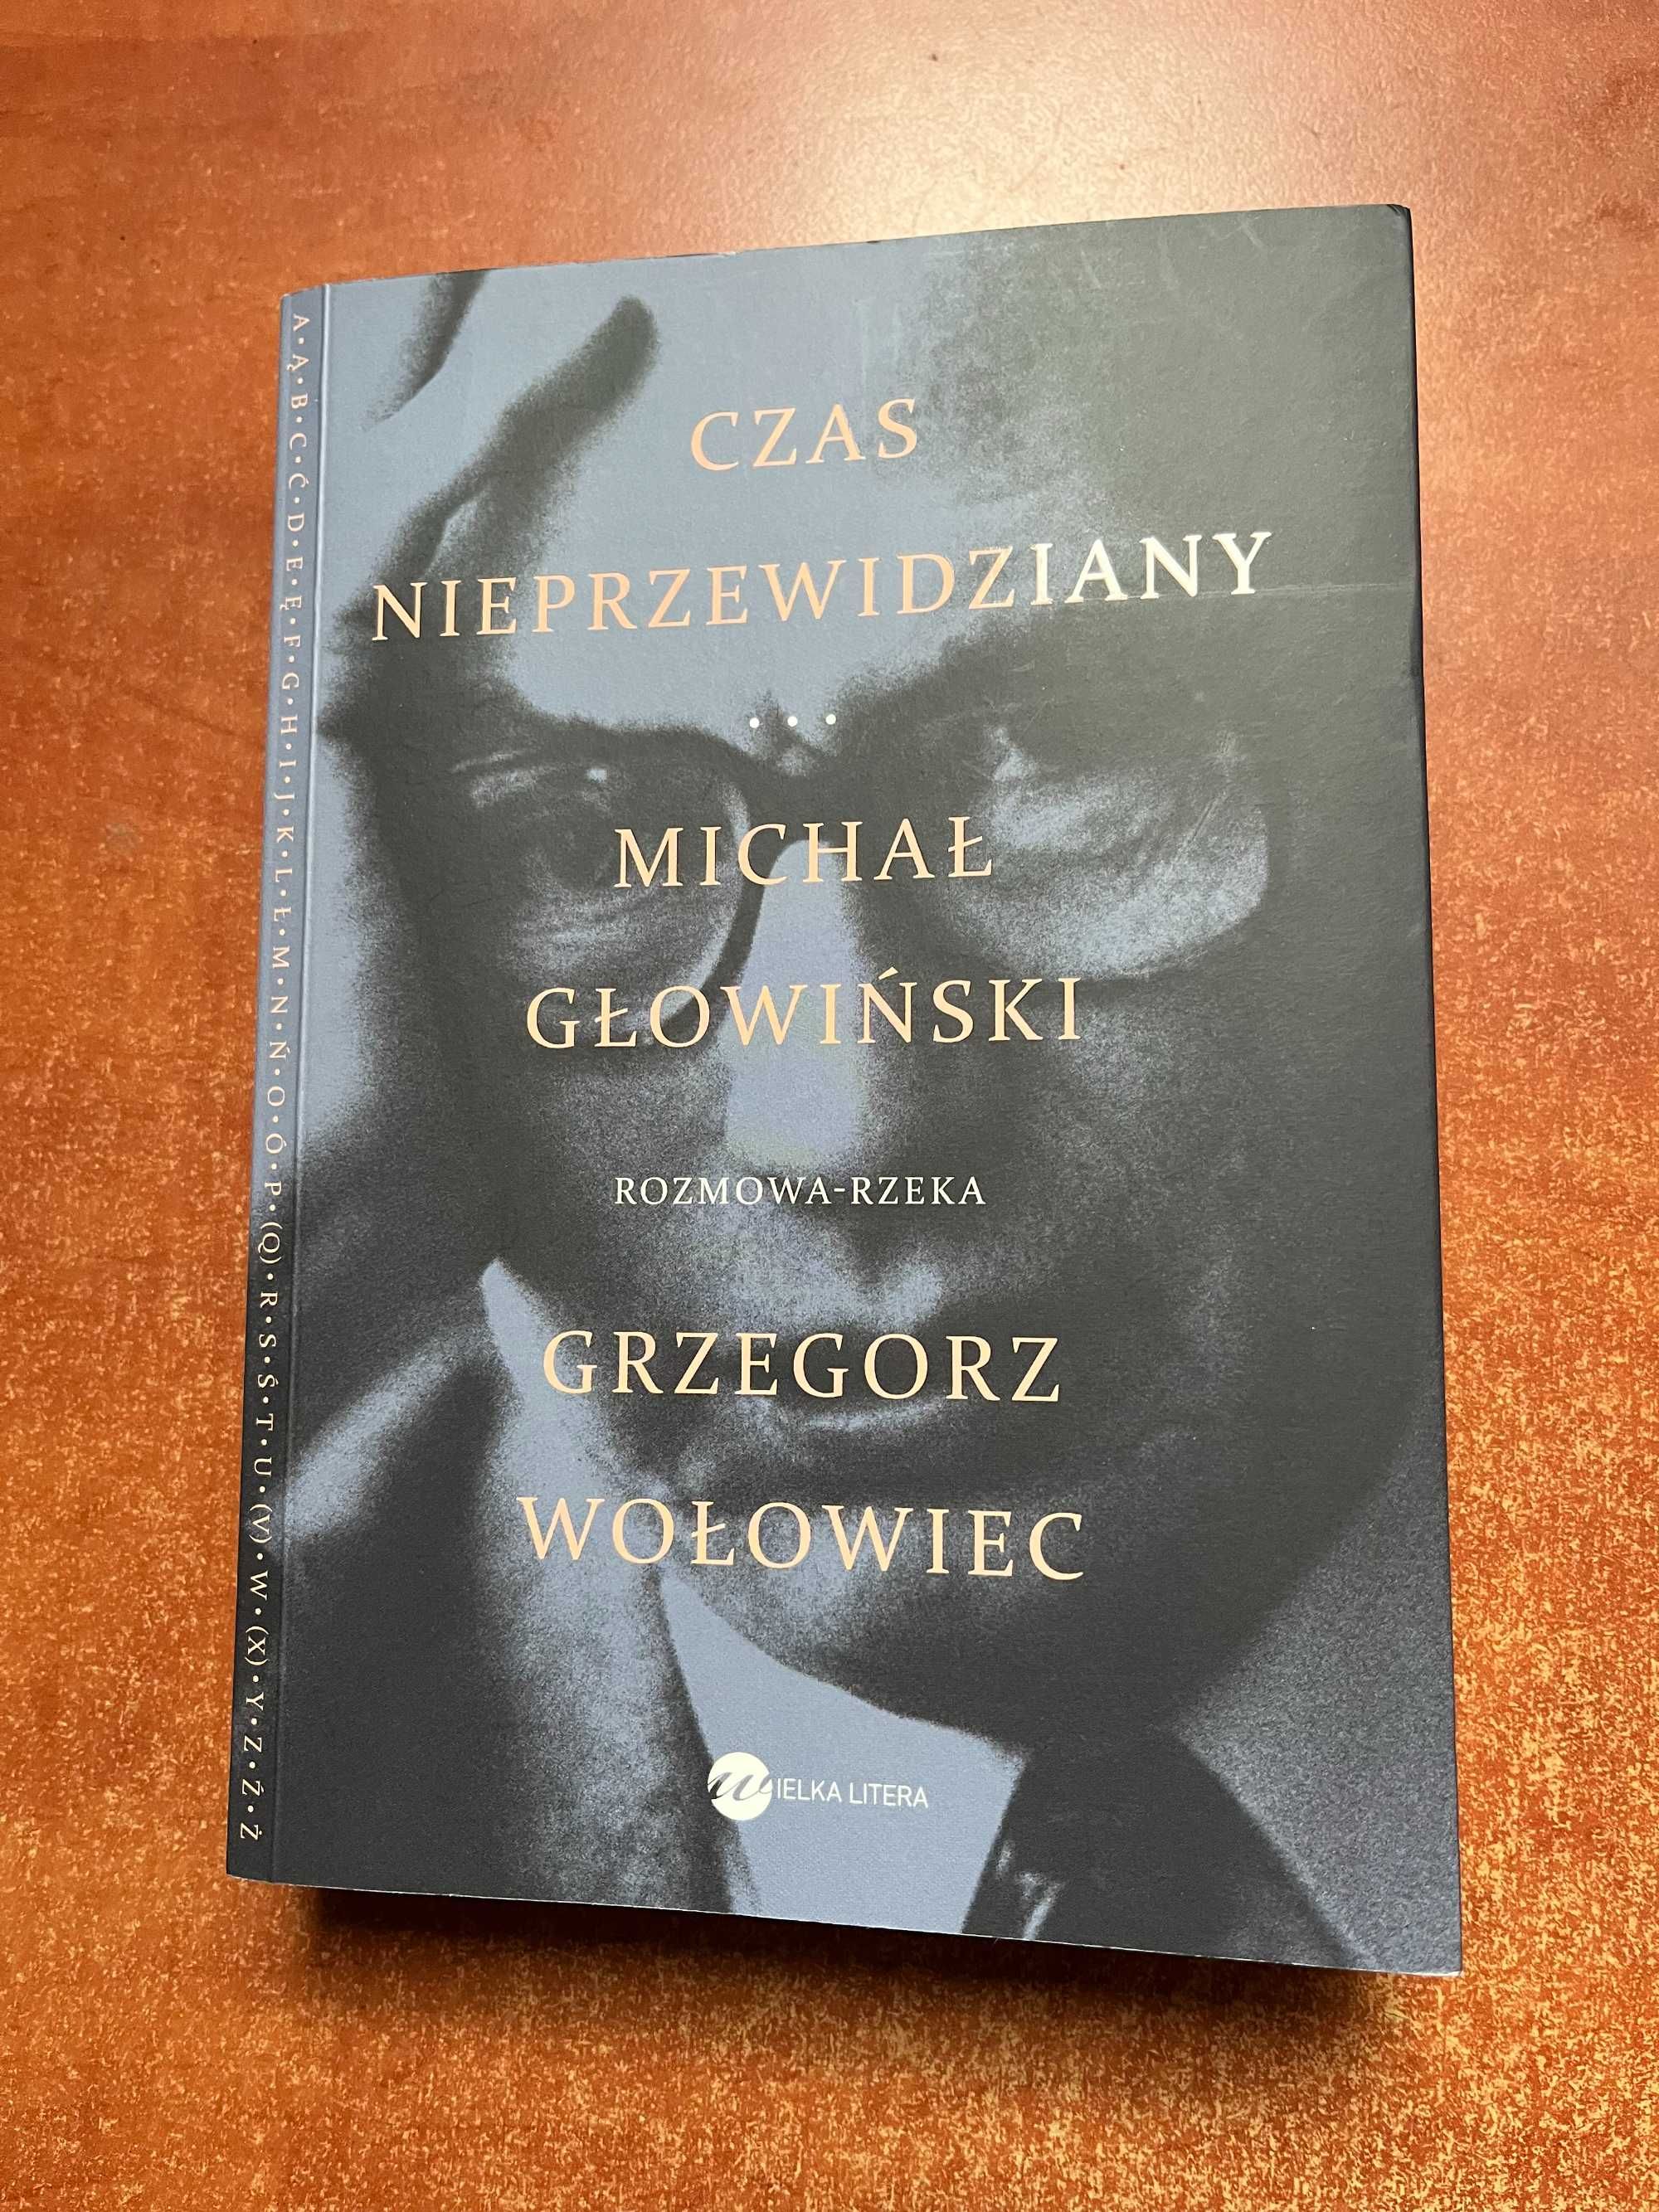 Czas nieprzewidziany - rozmowa rzeka - M. Głowiński / G. Wołowiec